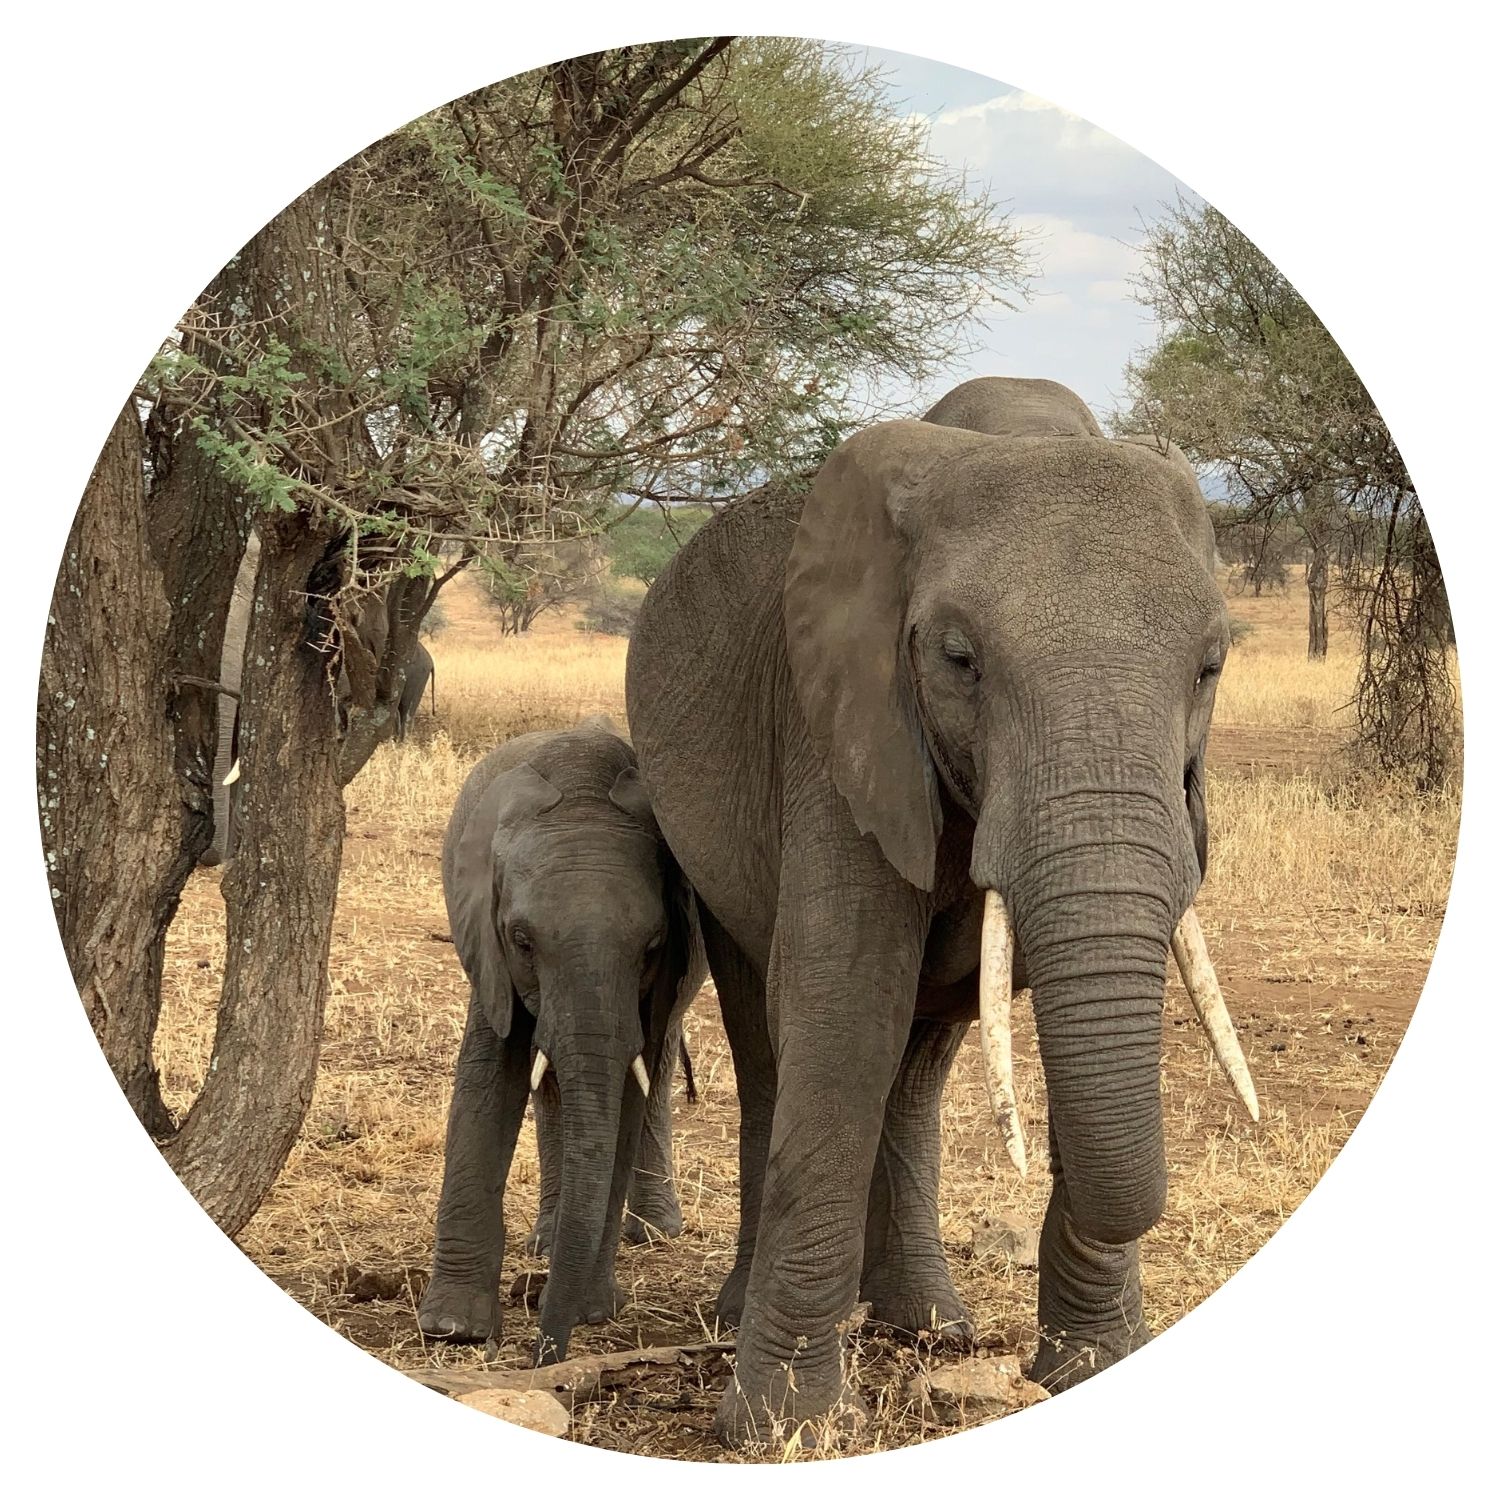 Une mère éléphant avec son petit, leurs défenses intactes, en pleine nature tanzanienne, offrant une scène émouvante pour un voyage en Tanzanie.